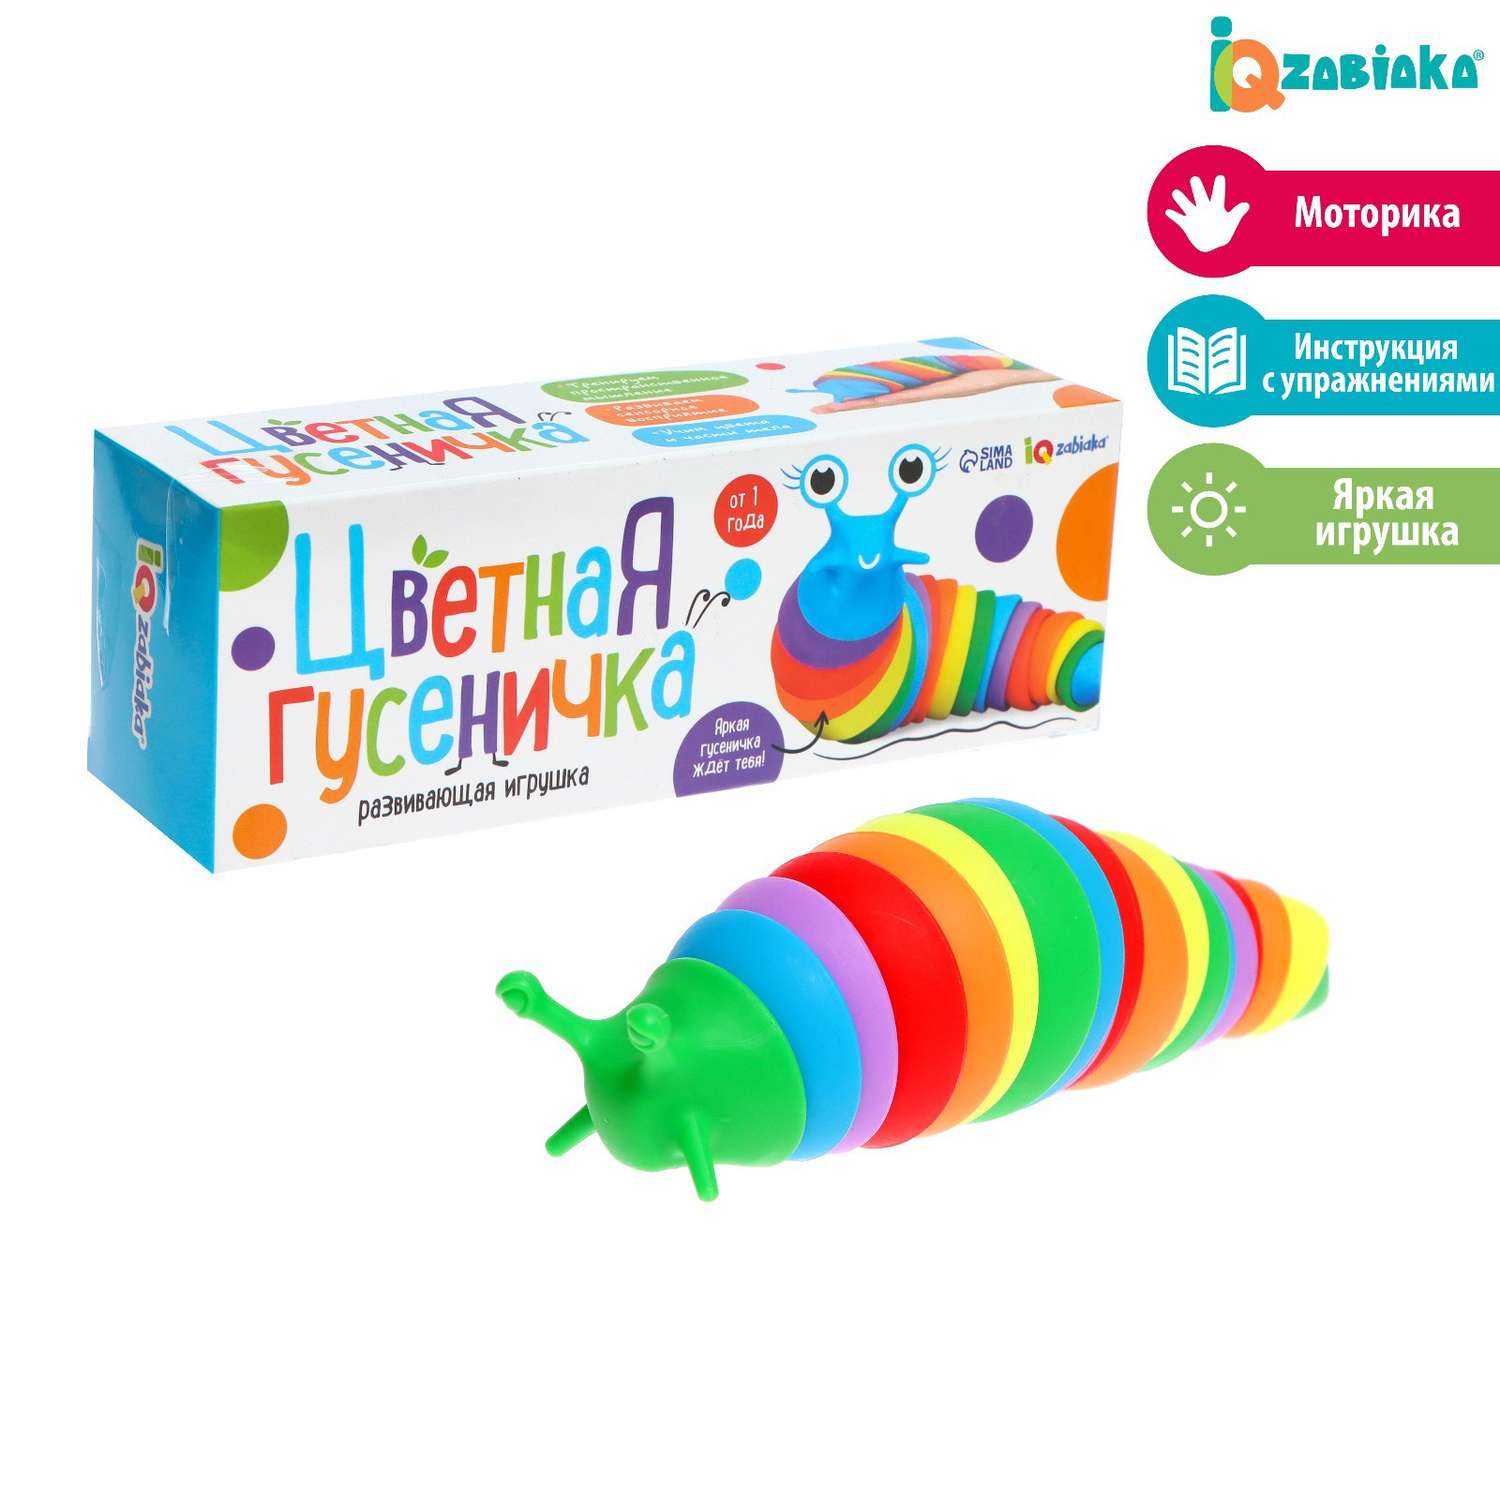 Развивающая игрушка IQ-ZABIAKA «Цветная гусеничка» - фото 1